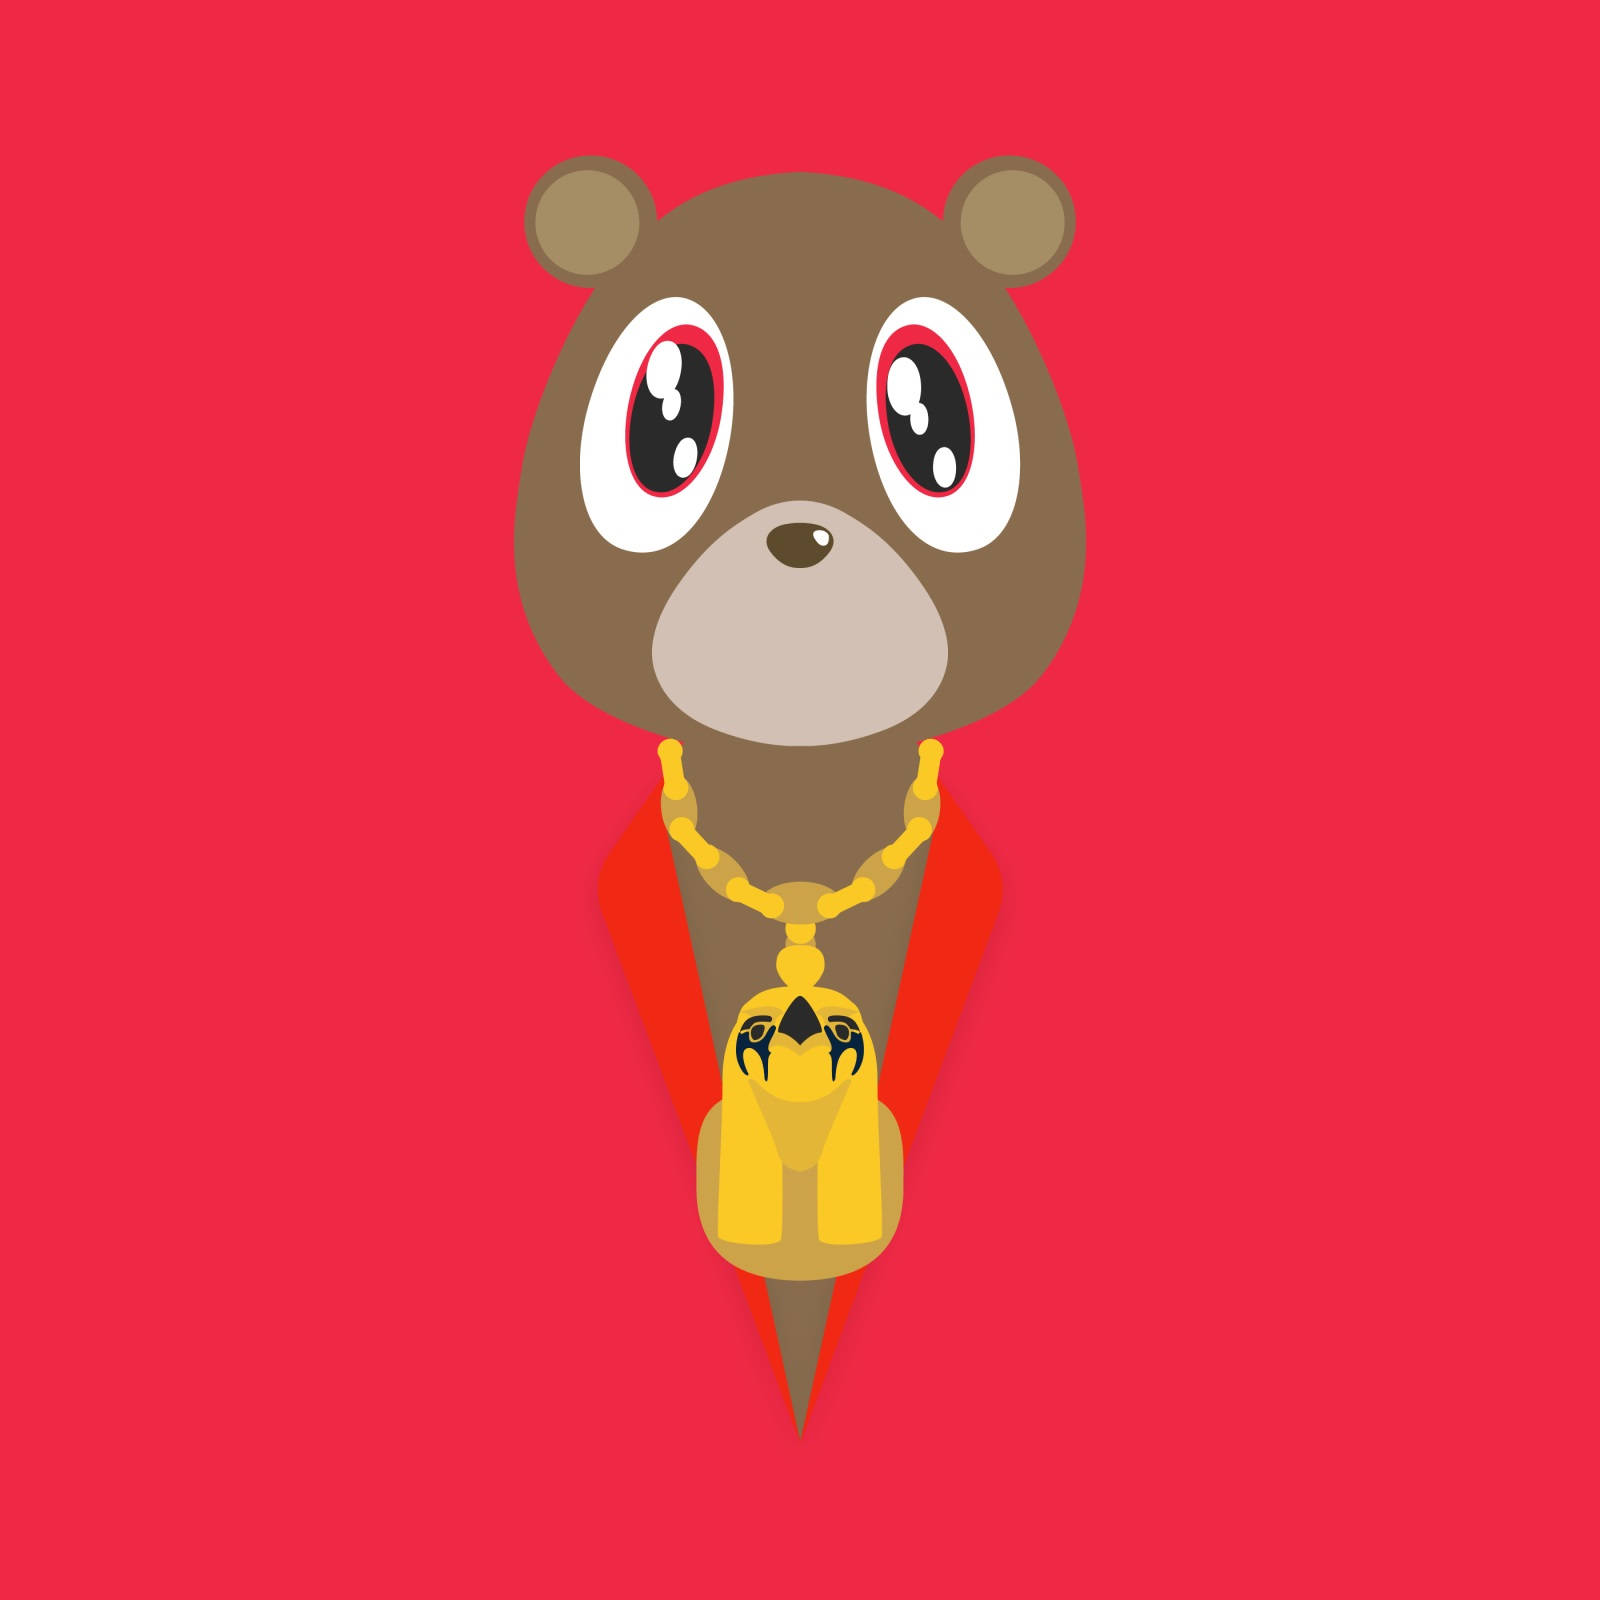 Kanye West Bear Minimalist Red Aesthetic Background